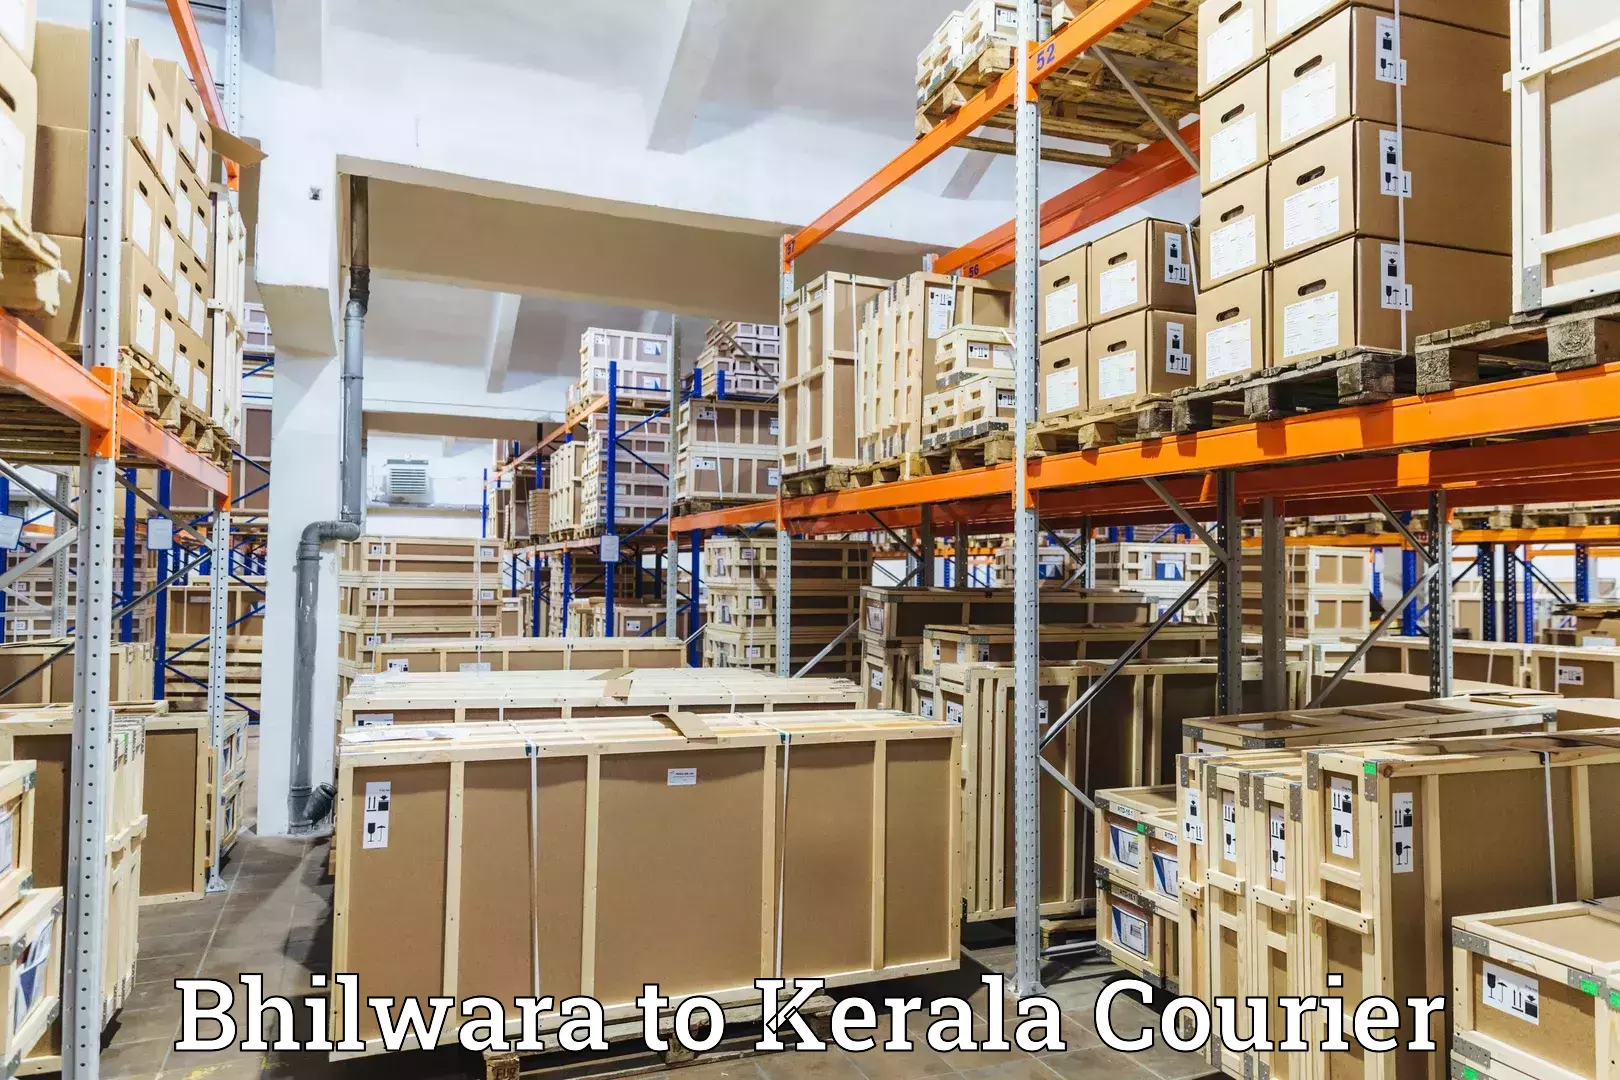 Next-day freight services Bhilwara to Kerala